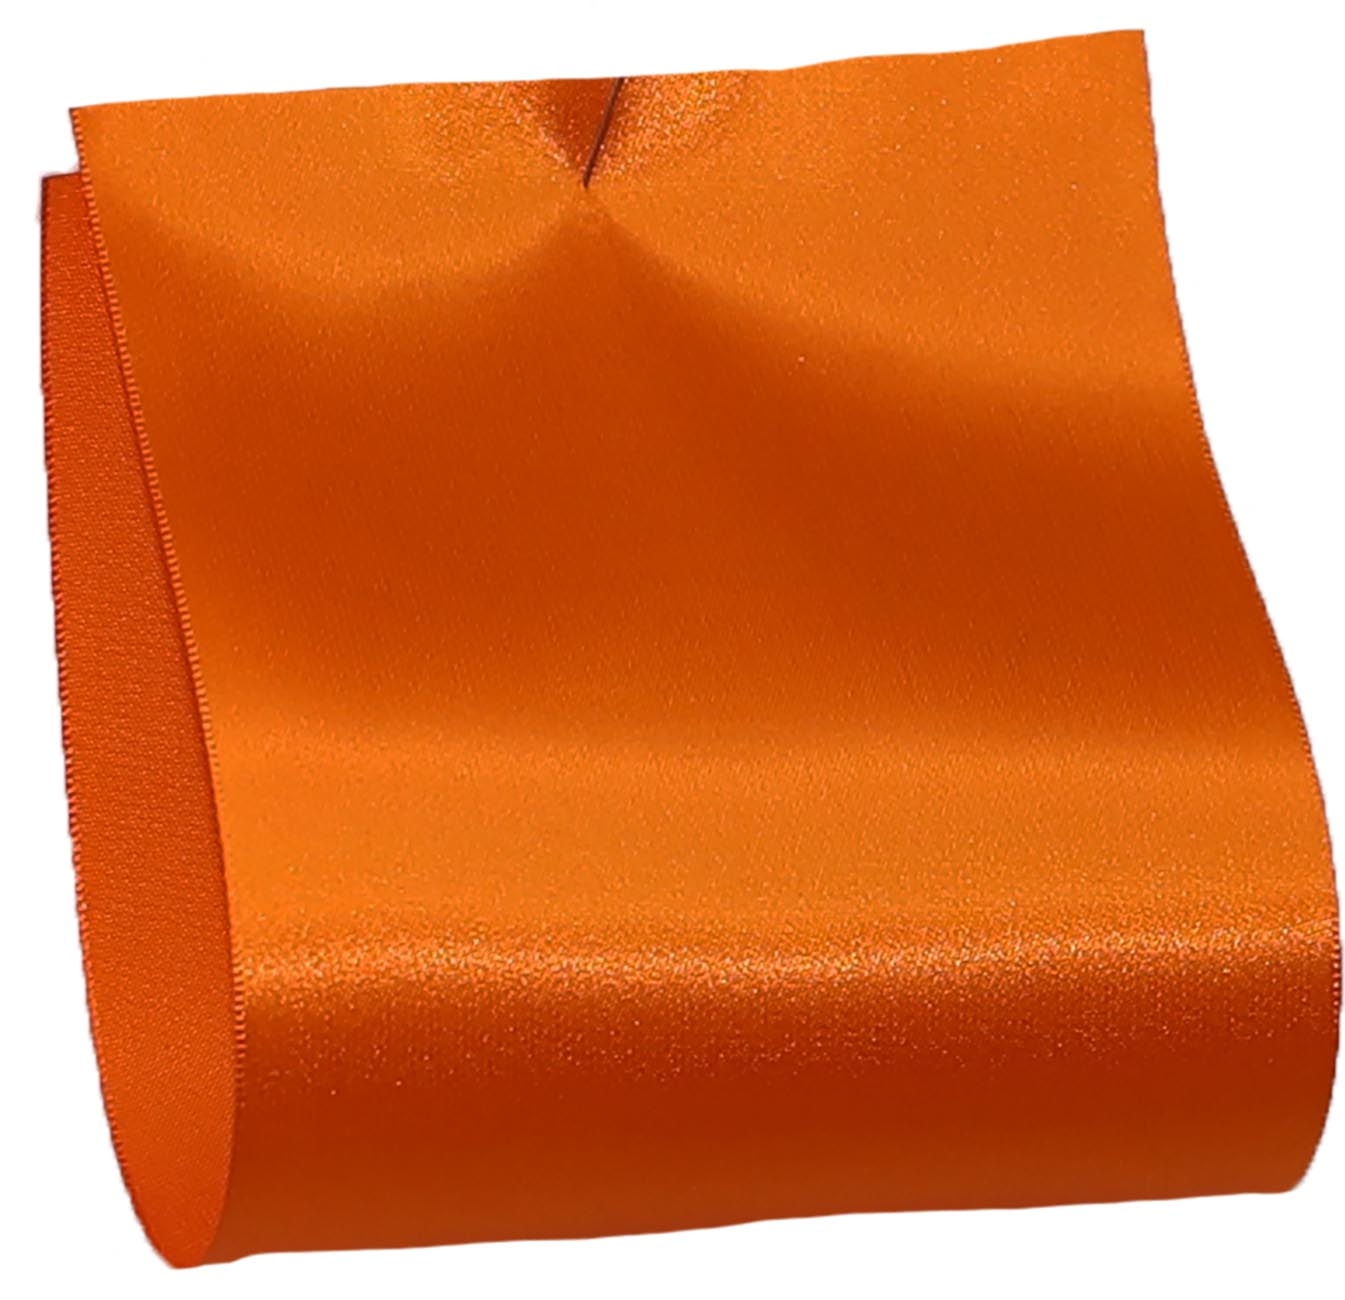 100mm wide satin ribbon in orange